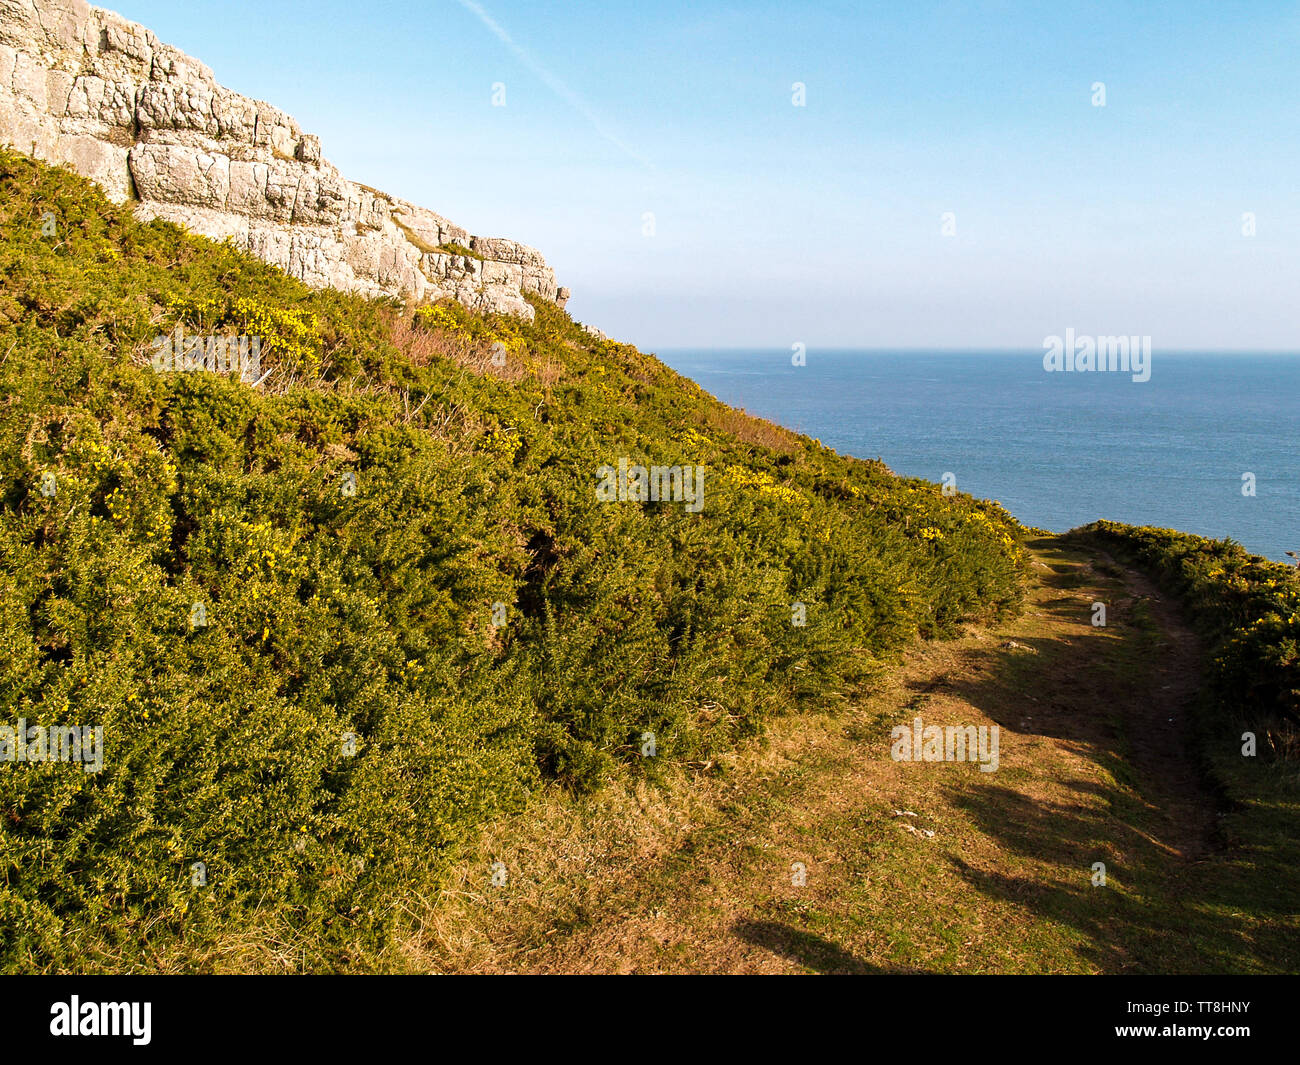 Une vue de la sentier du littoral avec l'ajonc et rochers surplombant la mer. Près de Oxwich Point, Oxwich Bay, Gower, Pays de Galles, Royaume-Uni. Banque D'Images